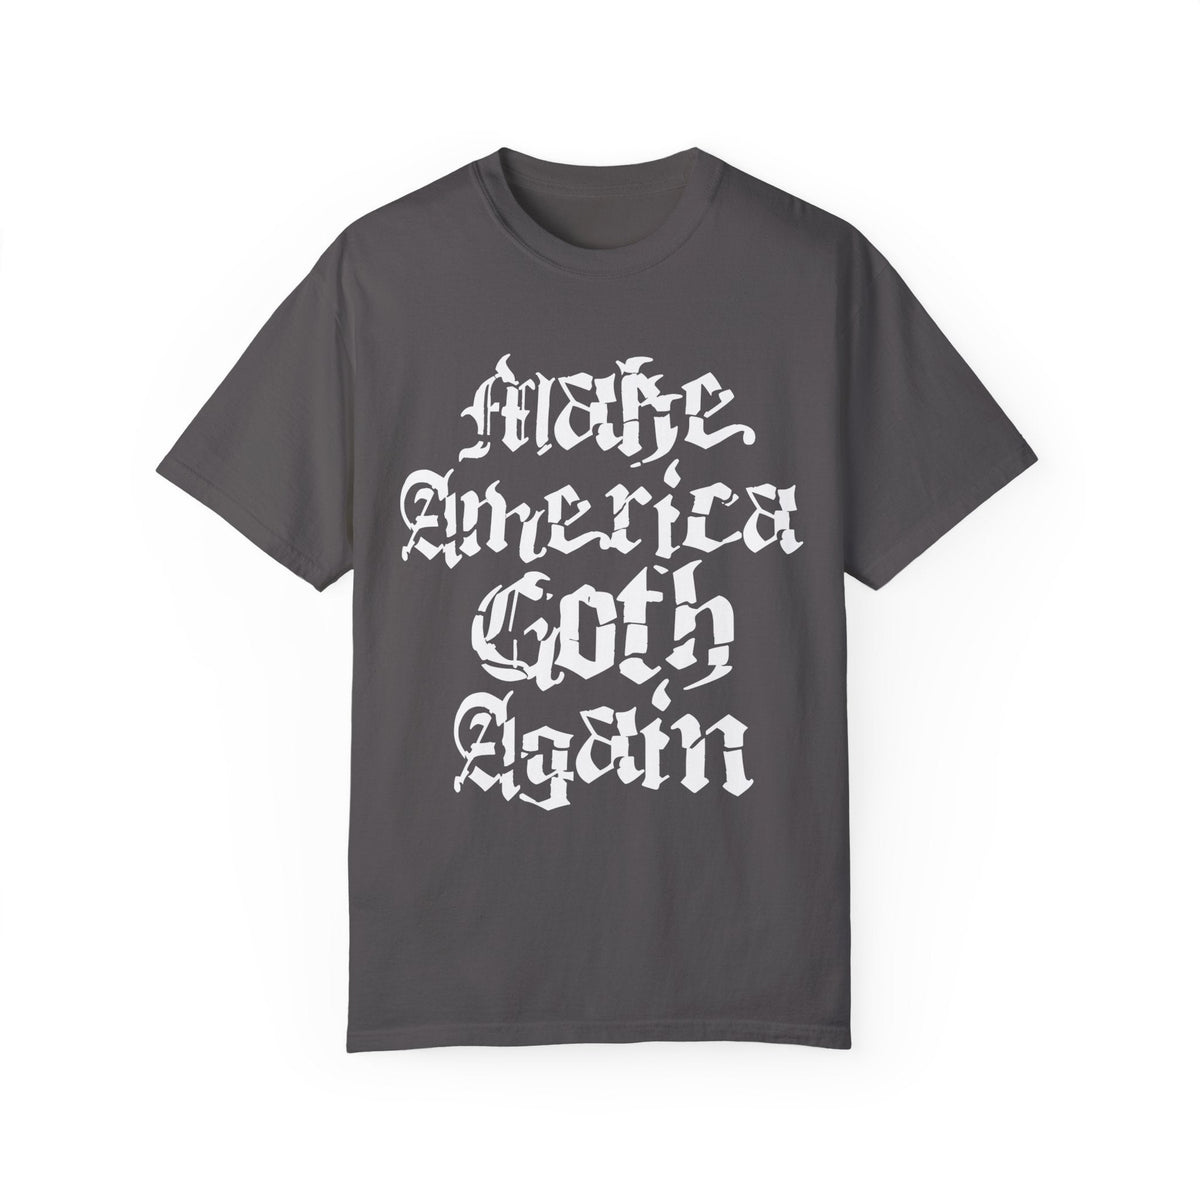 Make America Goth Again Comfy Tee - Goth Cloth Co.T - Shirt15246731519056885416